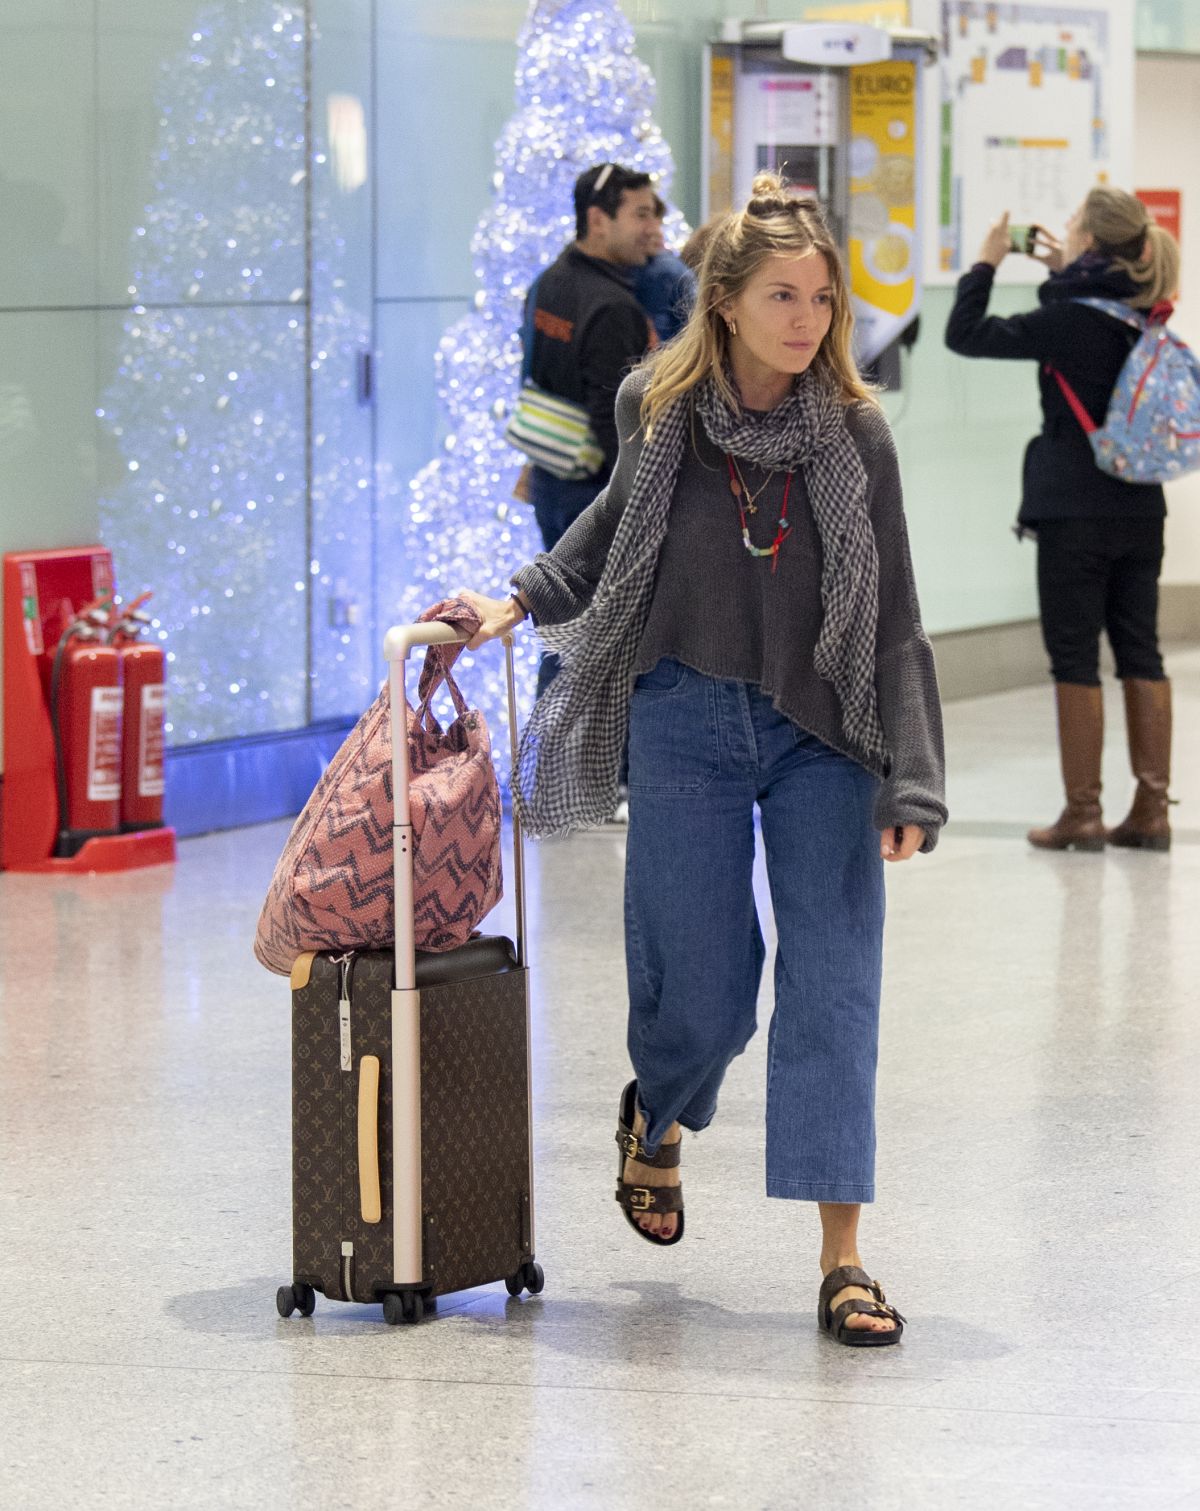 Sienna Miller Heathrow Airport December 27, 2018 – Star Style